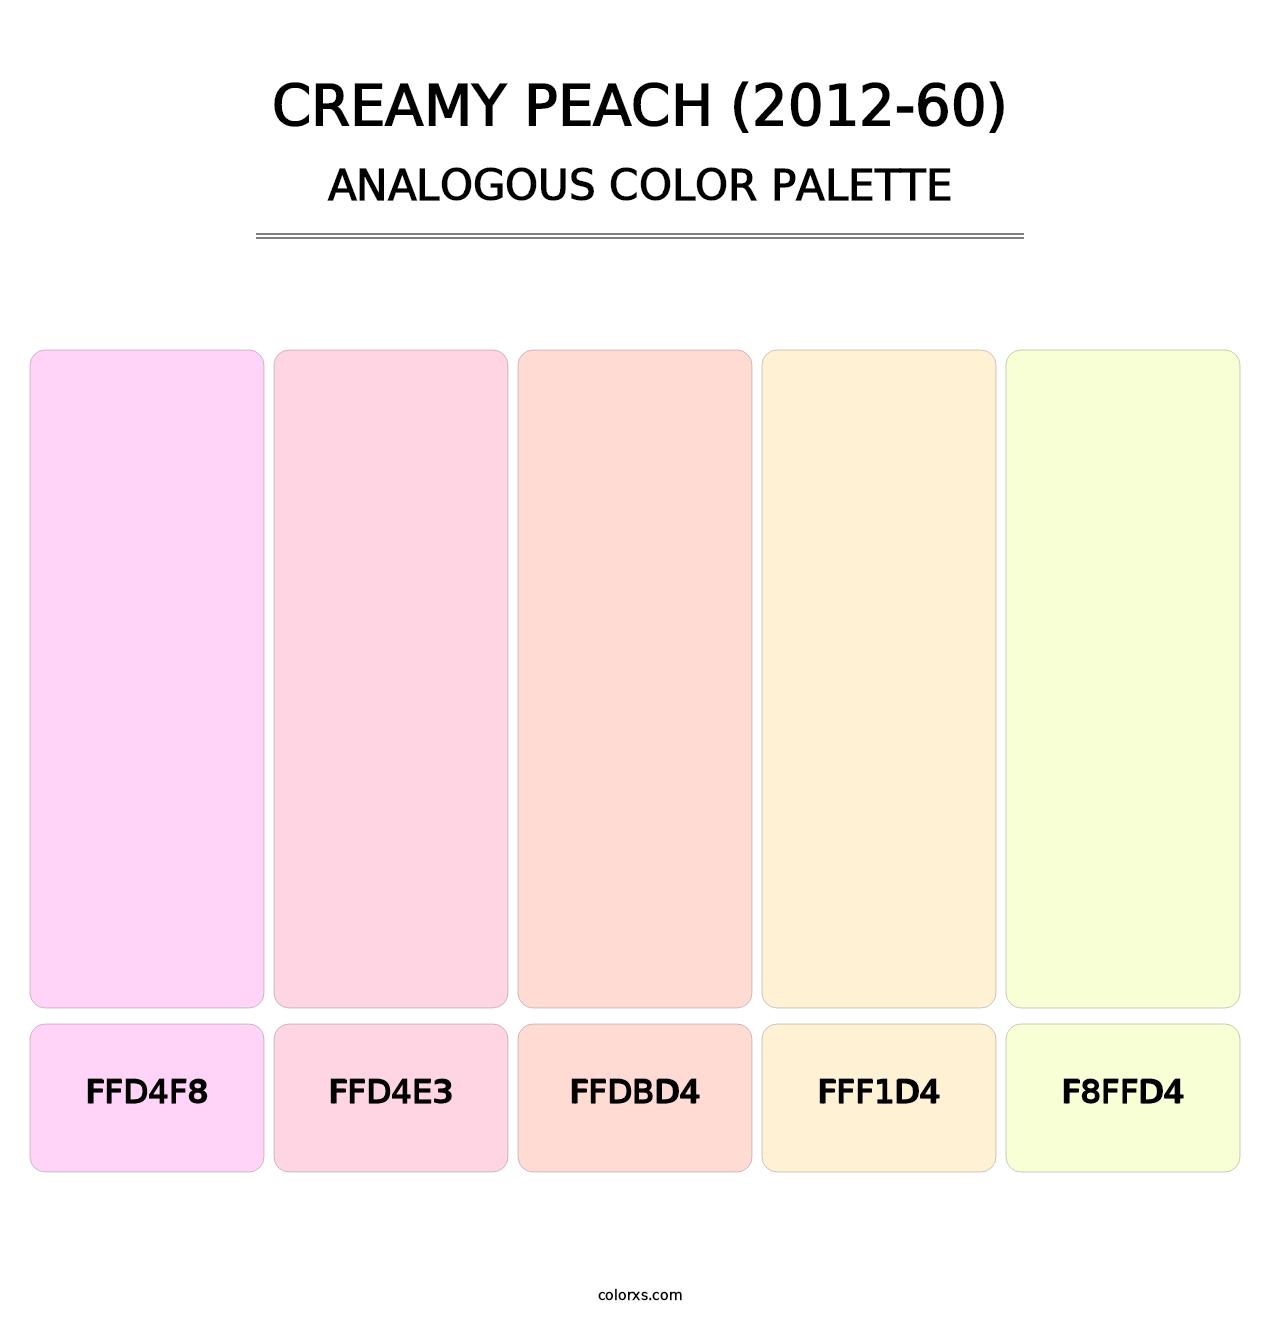 Creamy Peach (2012-60) - Analogous Color Palette